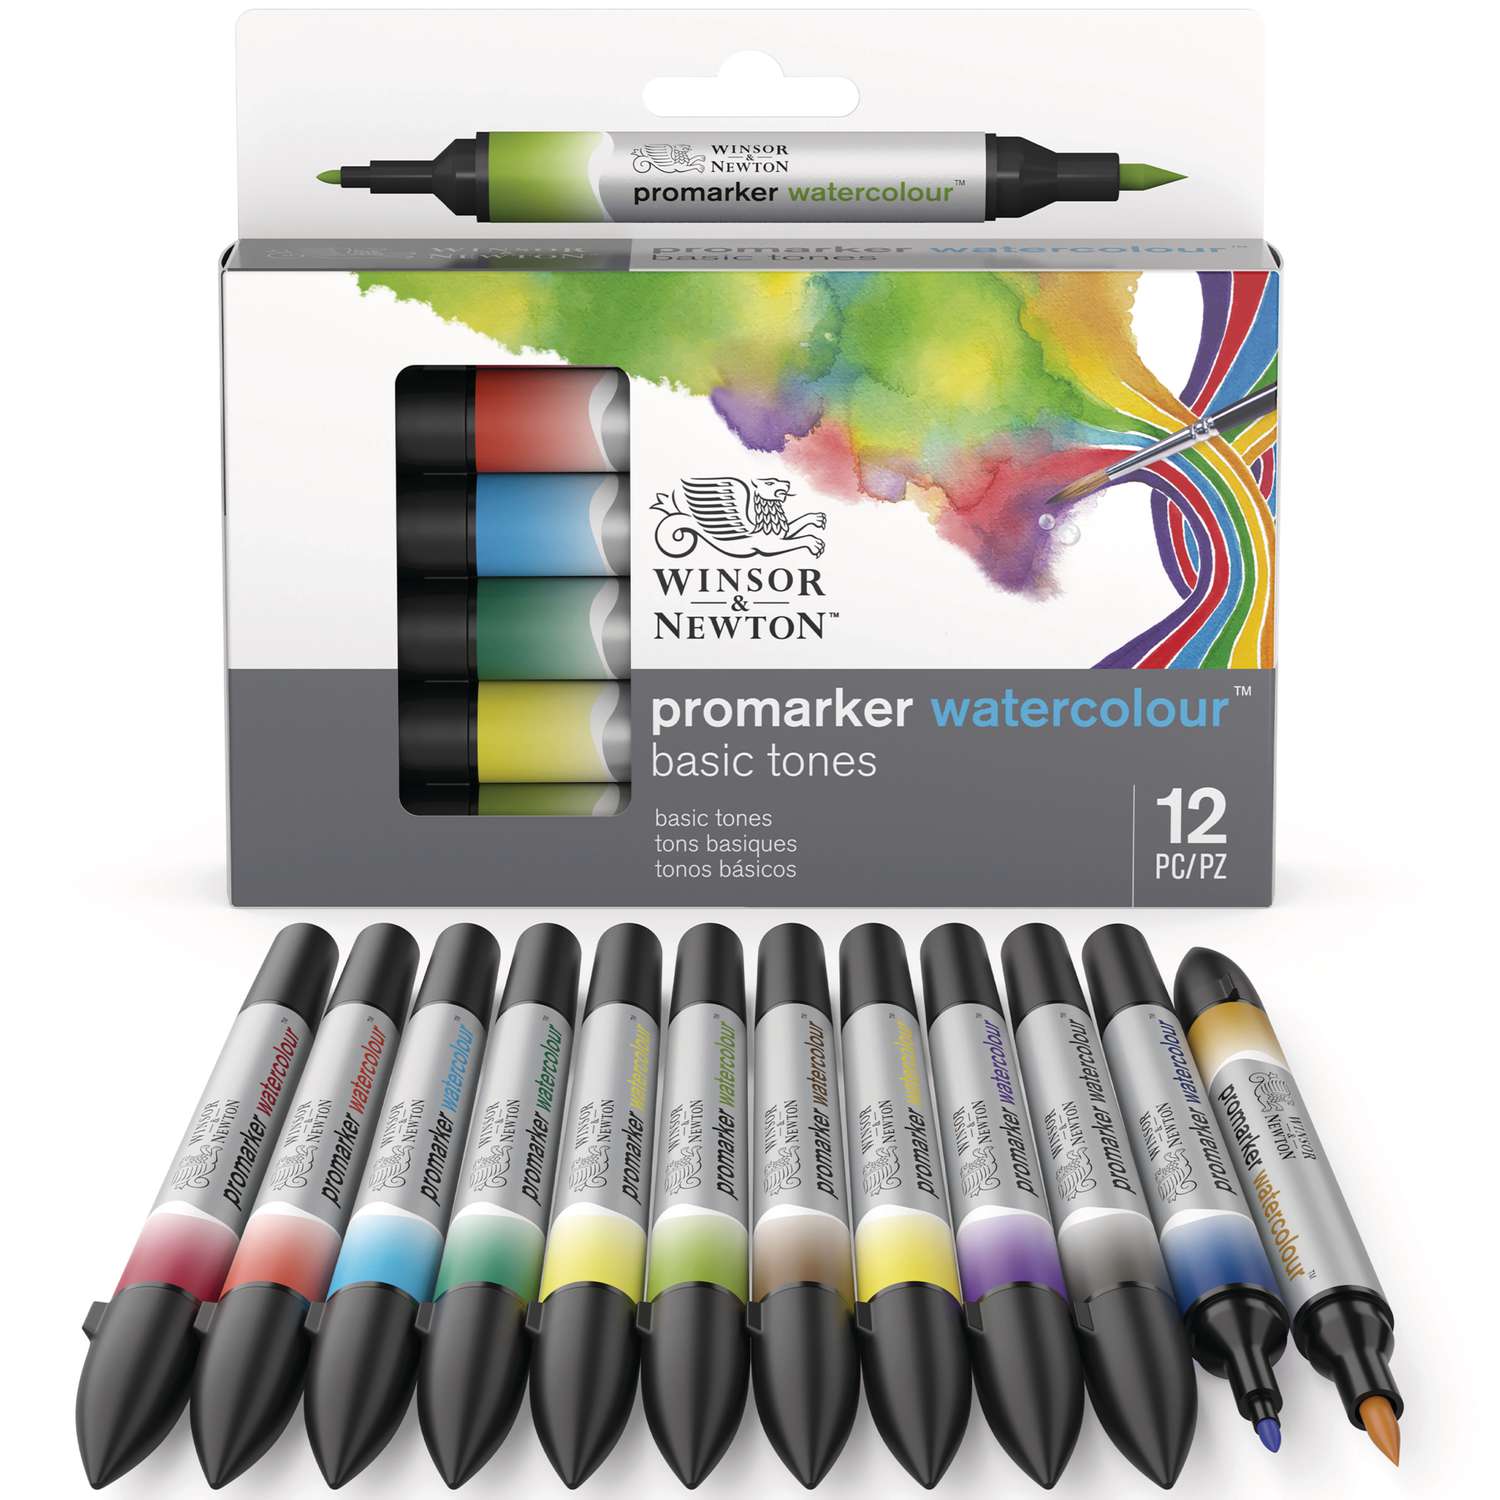 Coffrets de marqueurs aquarelle Promarker Watercolour Winsor